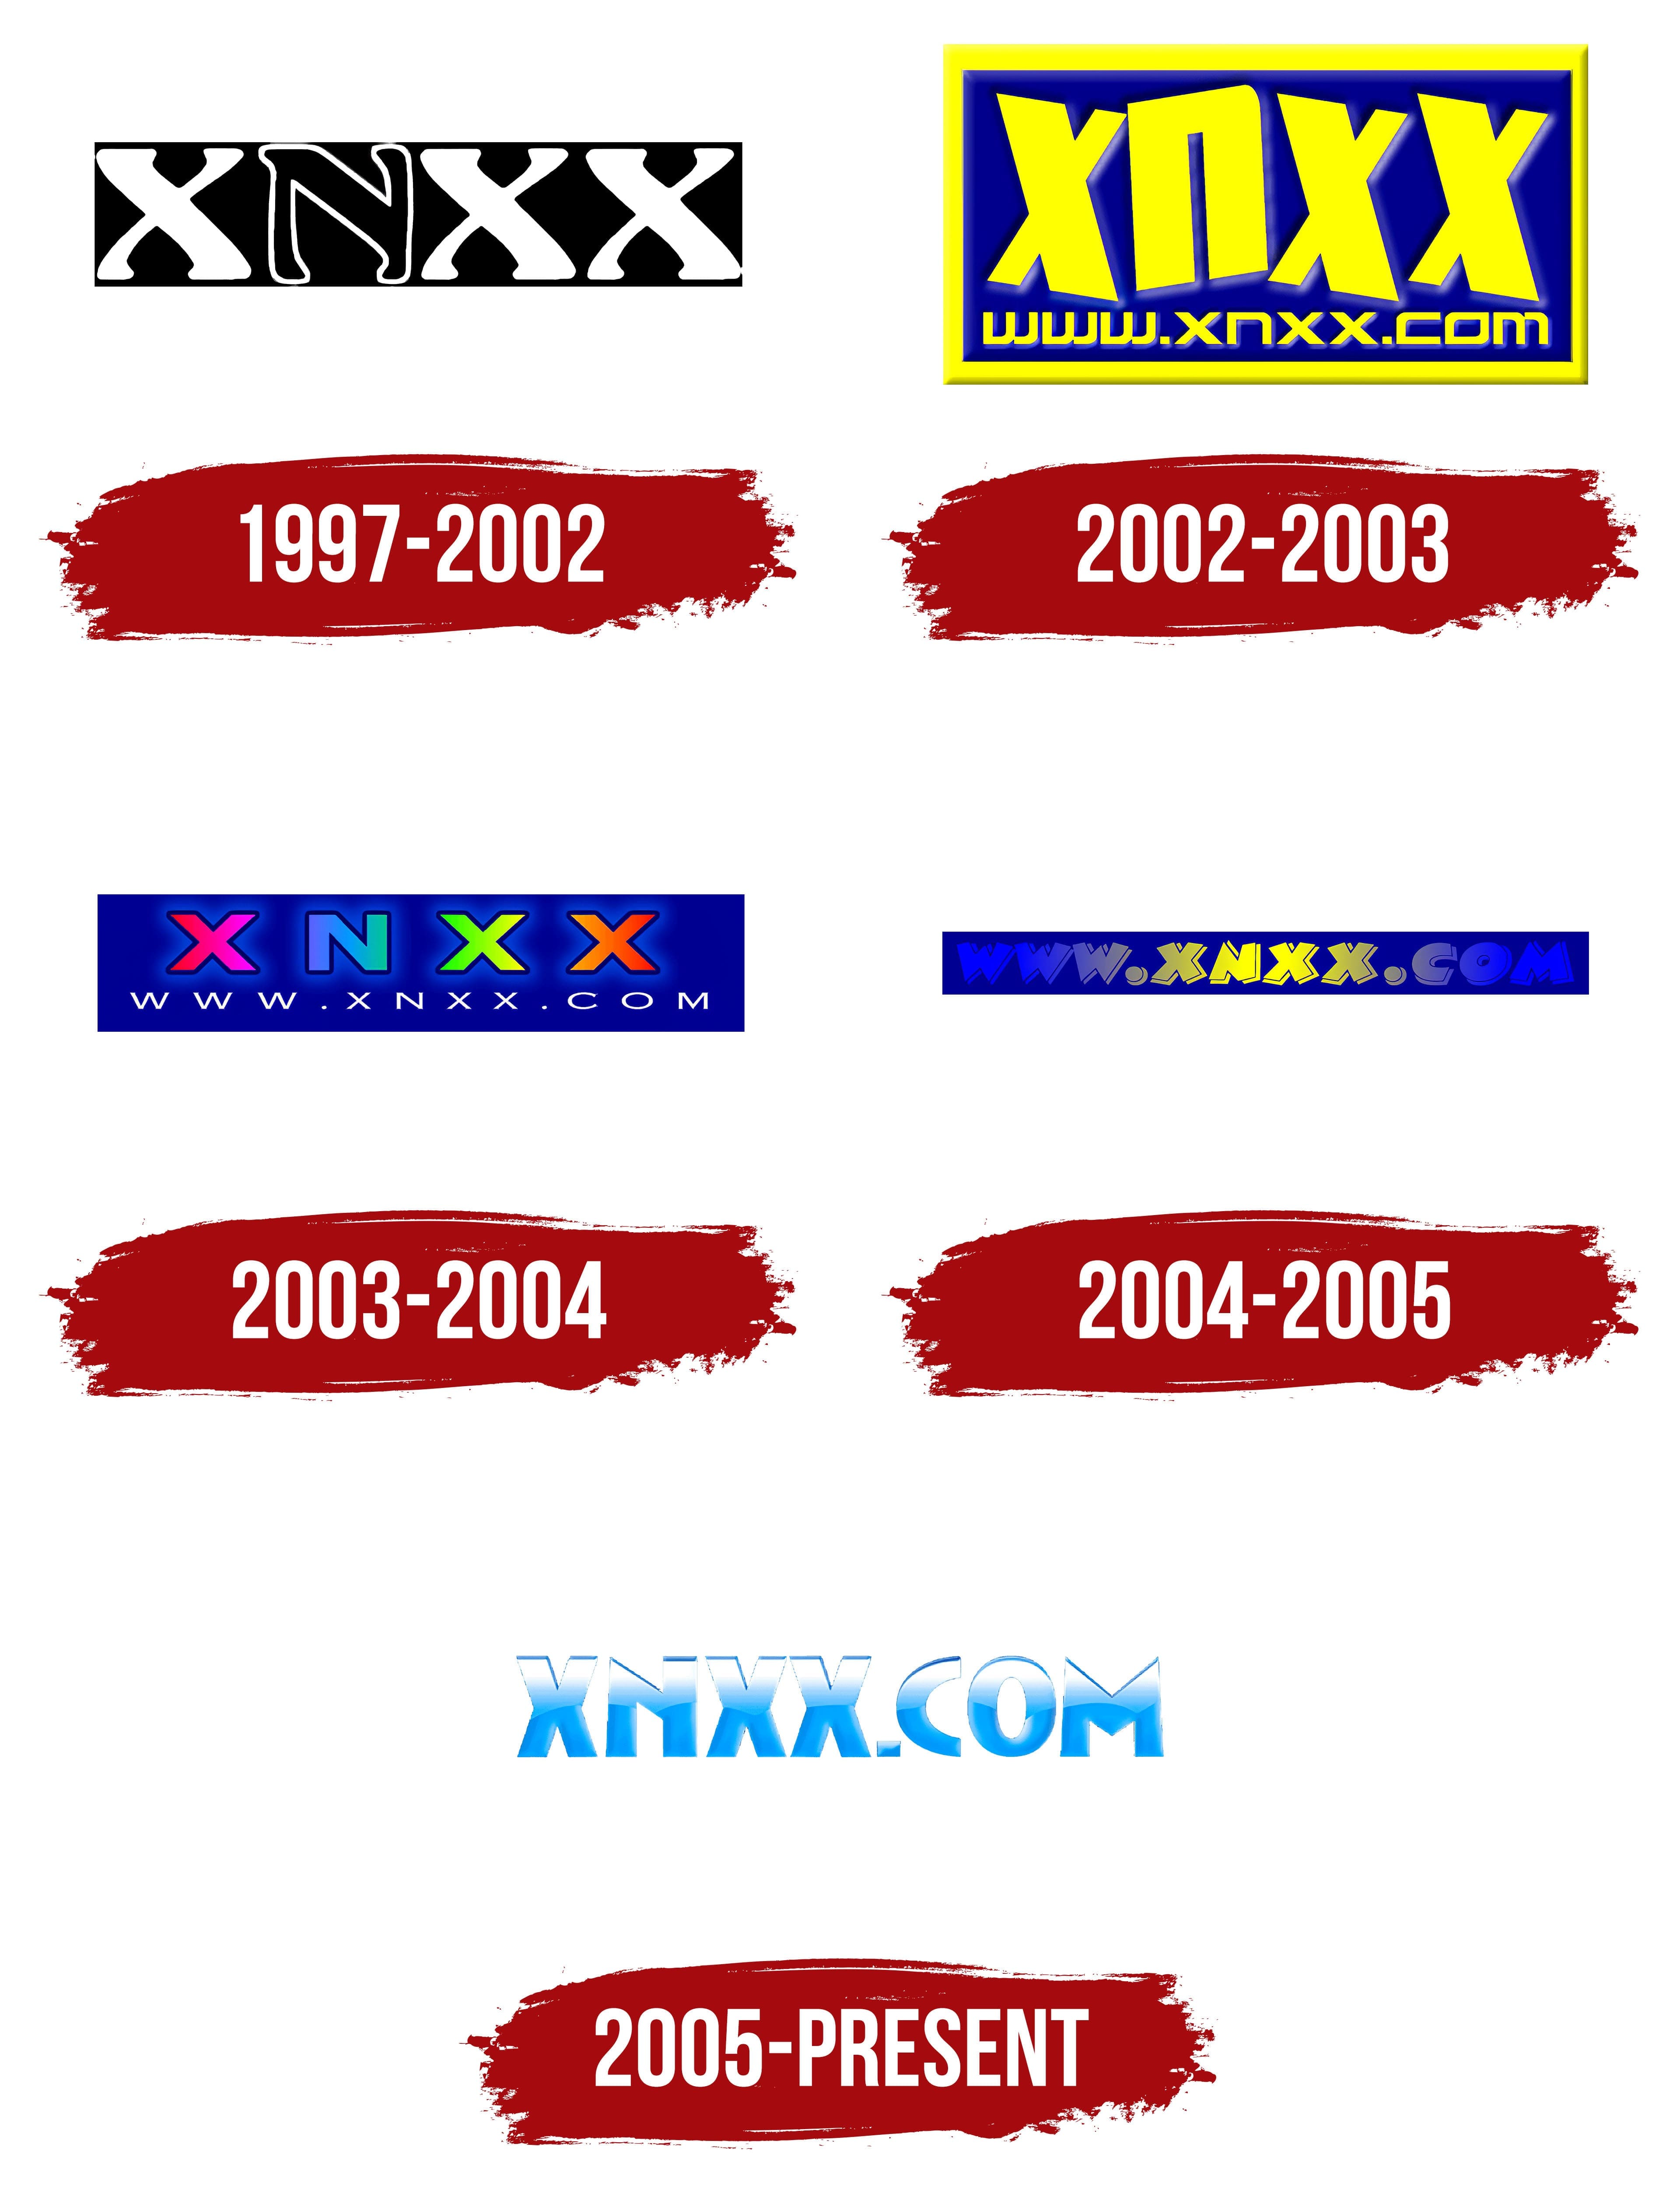 Ww Nxx Com - XNXX Logo, symbol, meaning, history, PNG, brand